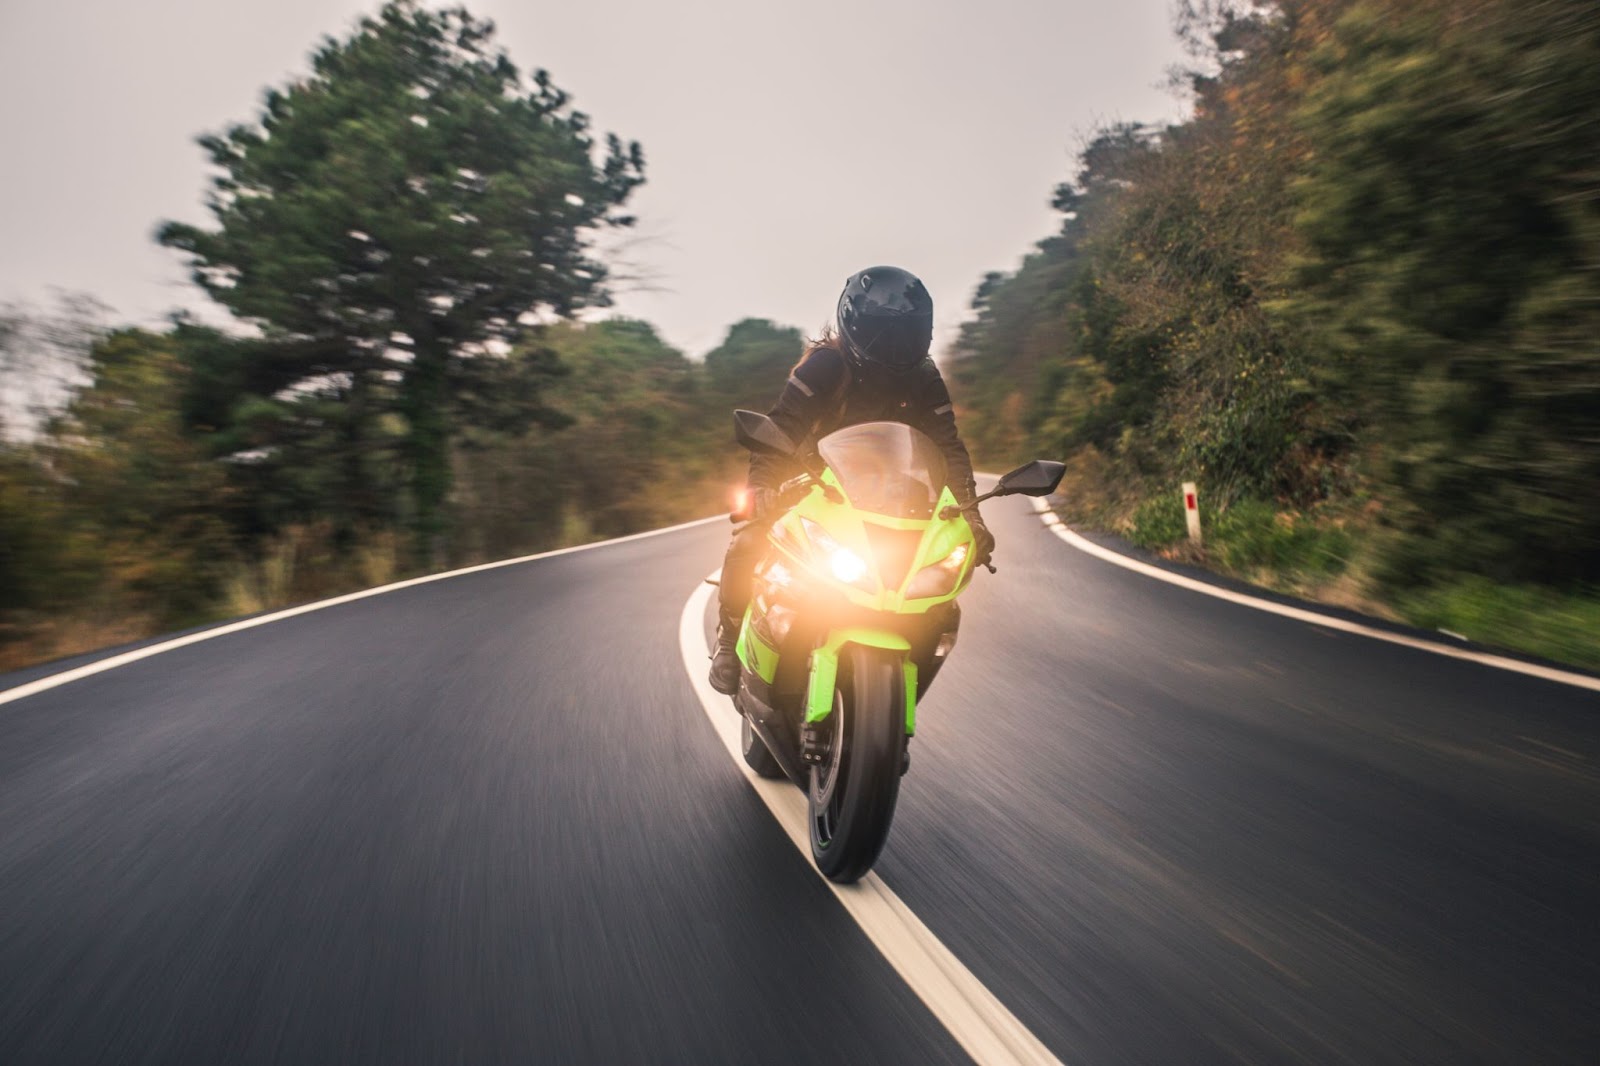 Motociclista em alta velocidade em estrada ao viajar de moto durante o dia.